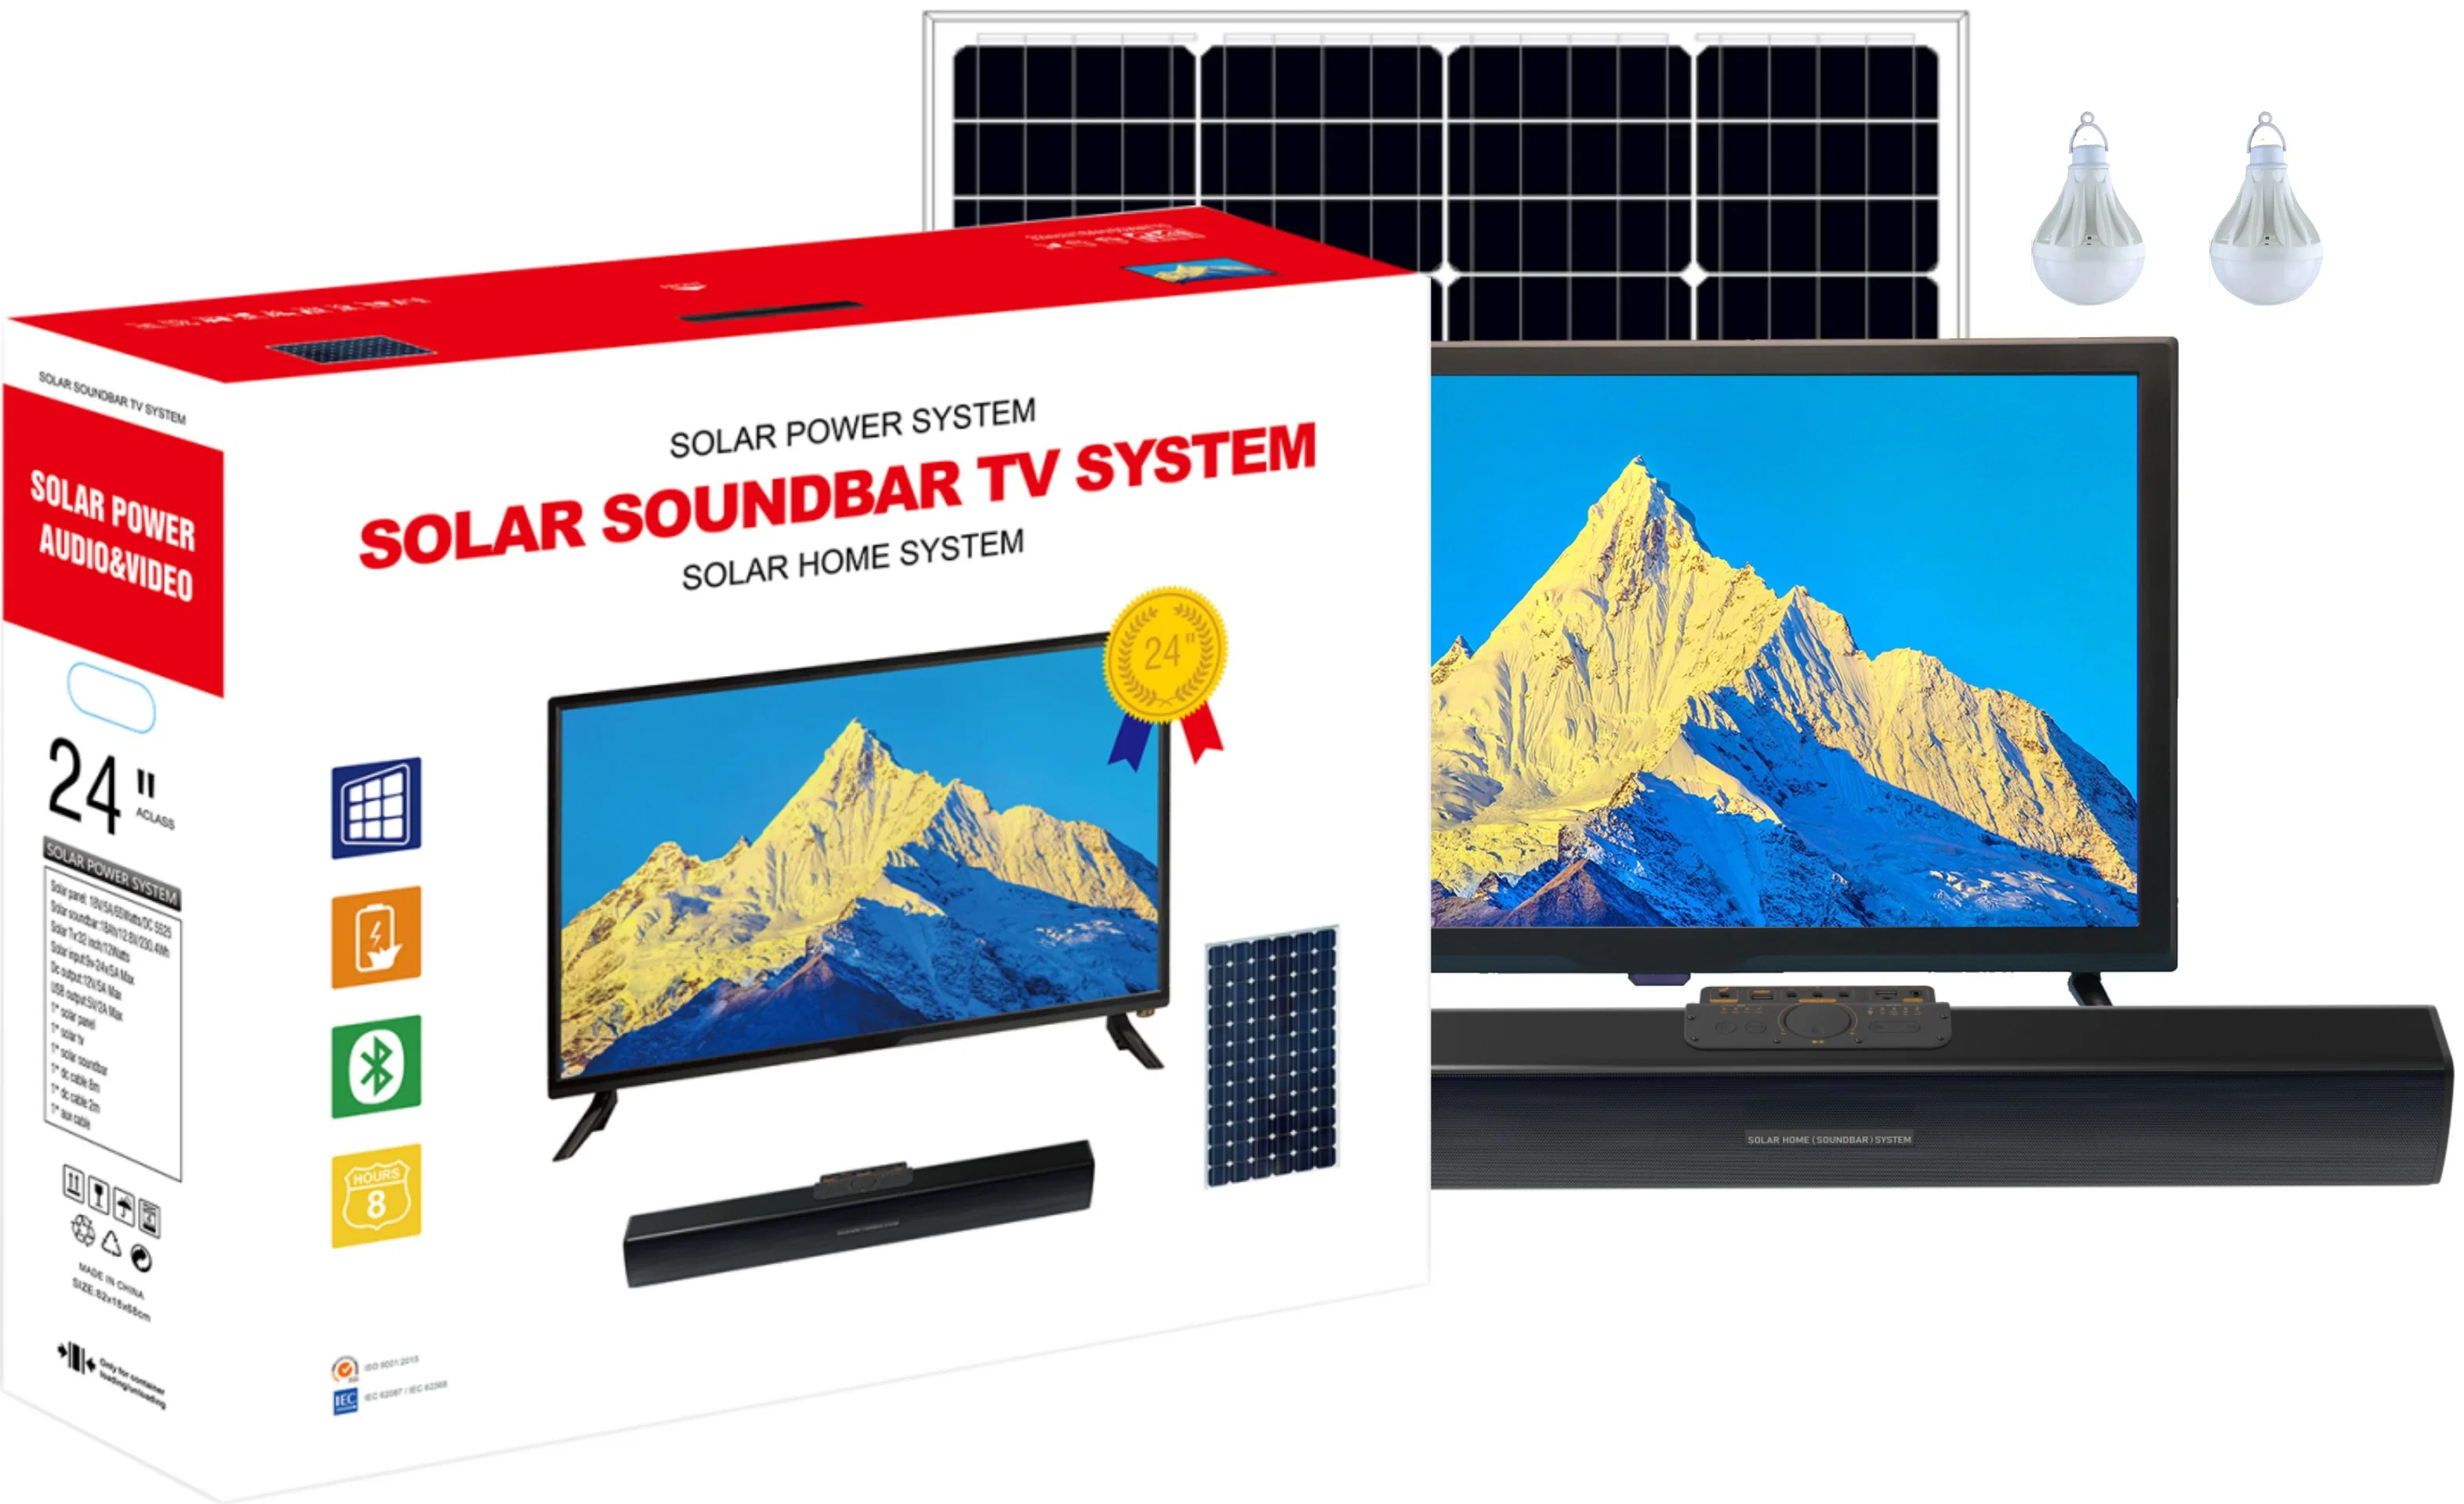 Комплект для использования солнечной энергии солнечной системы Soundbar ТВ-системы солнечной системы освещения для солнечной энергии системы хранения данных и питания